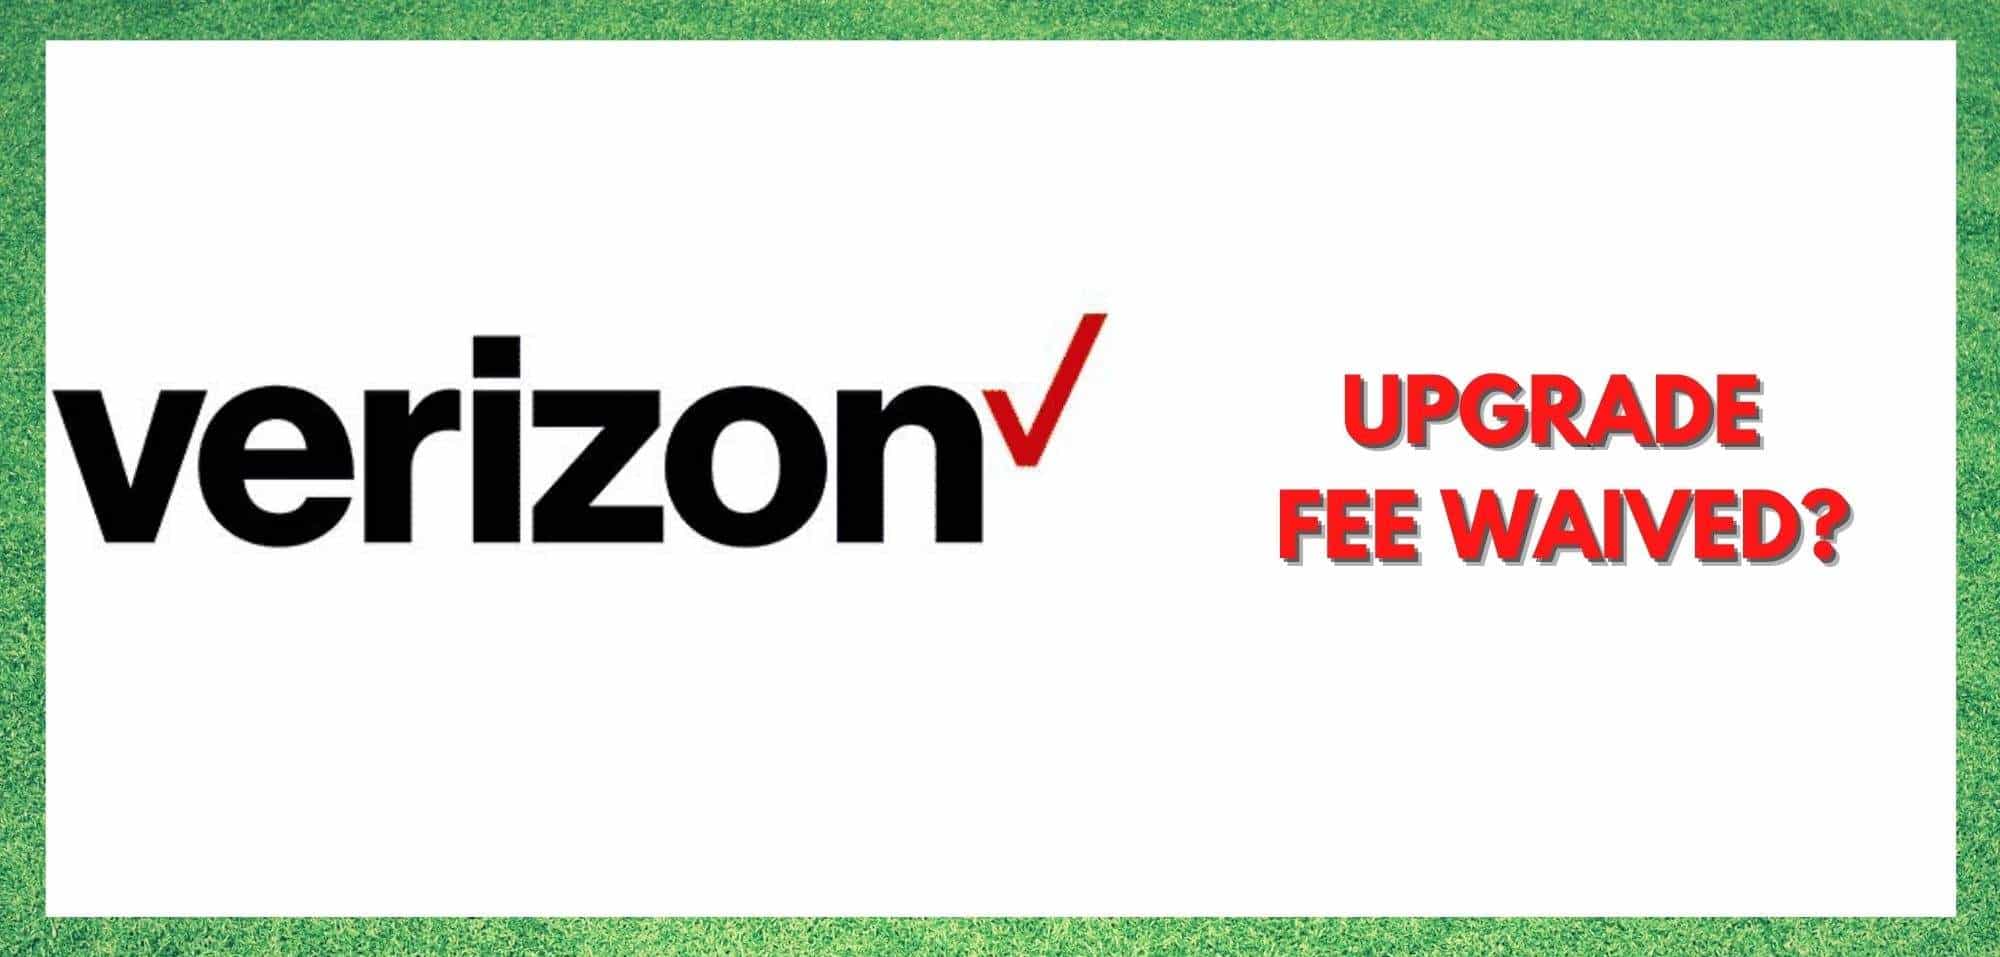 के तपाइँ Verizon अपग्रेड शुल्क माफ प्राप्त गर्न सक्नुहुन्छ?